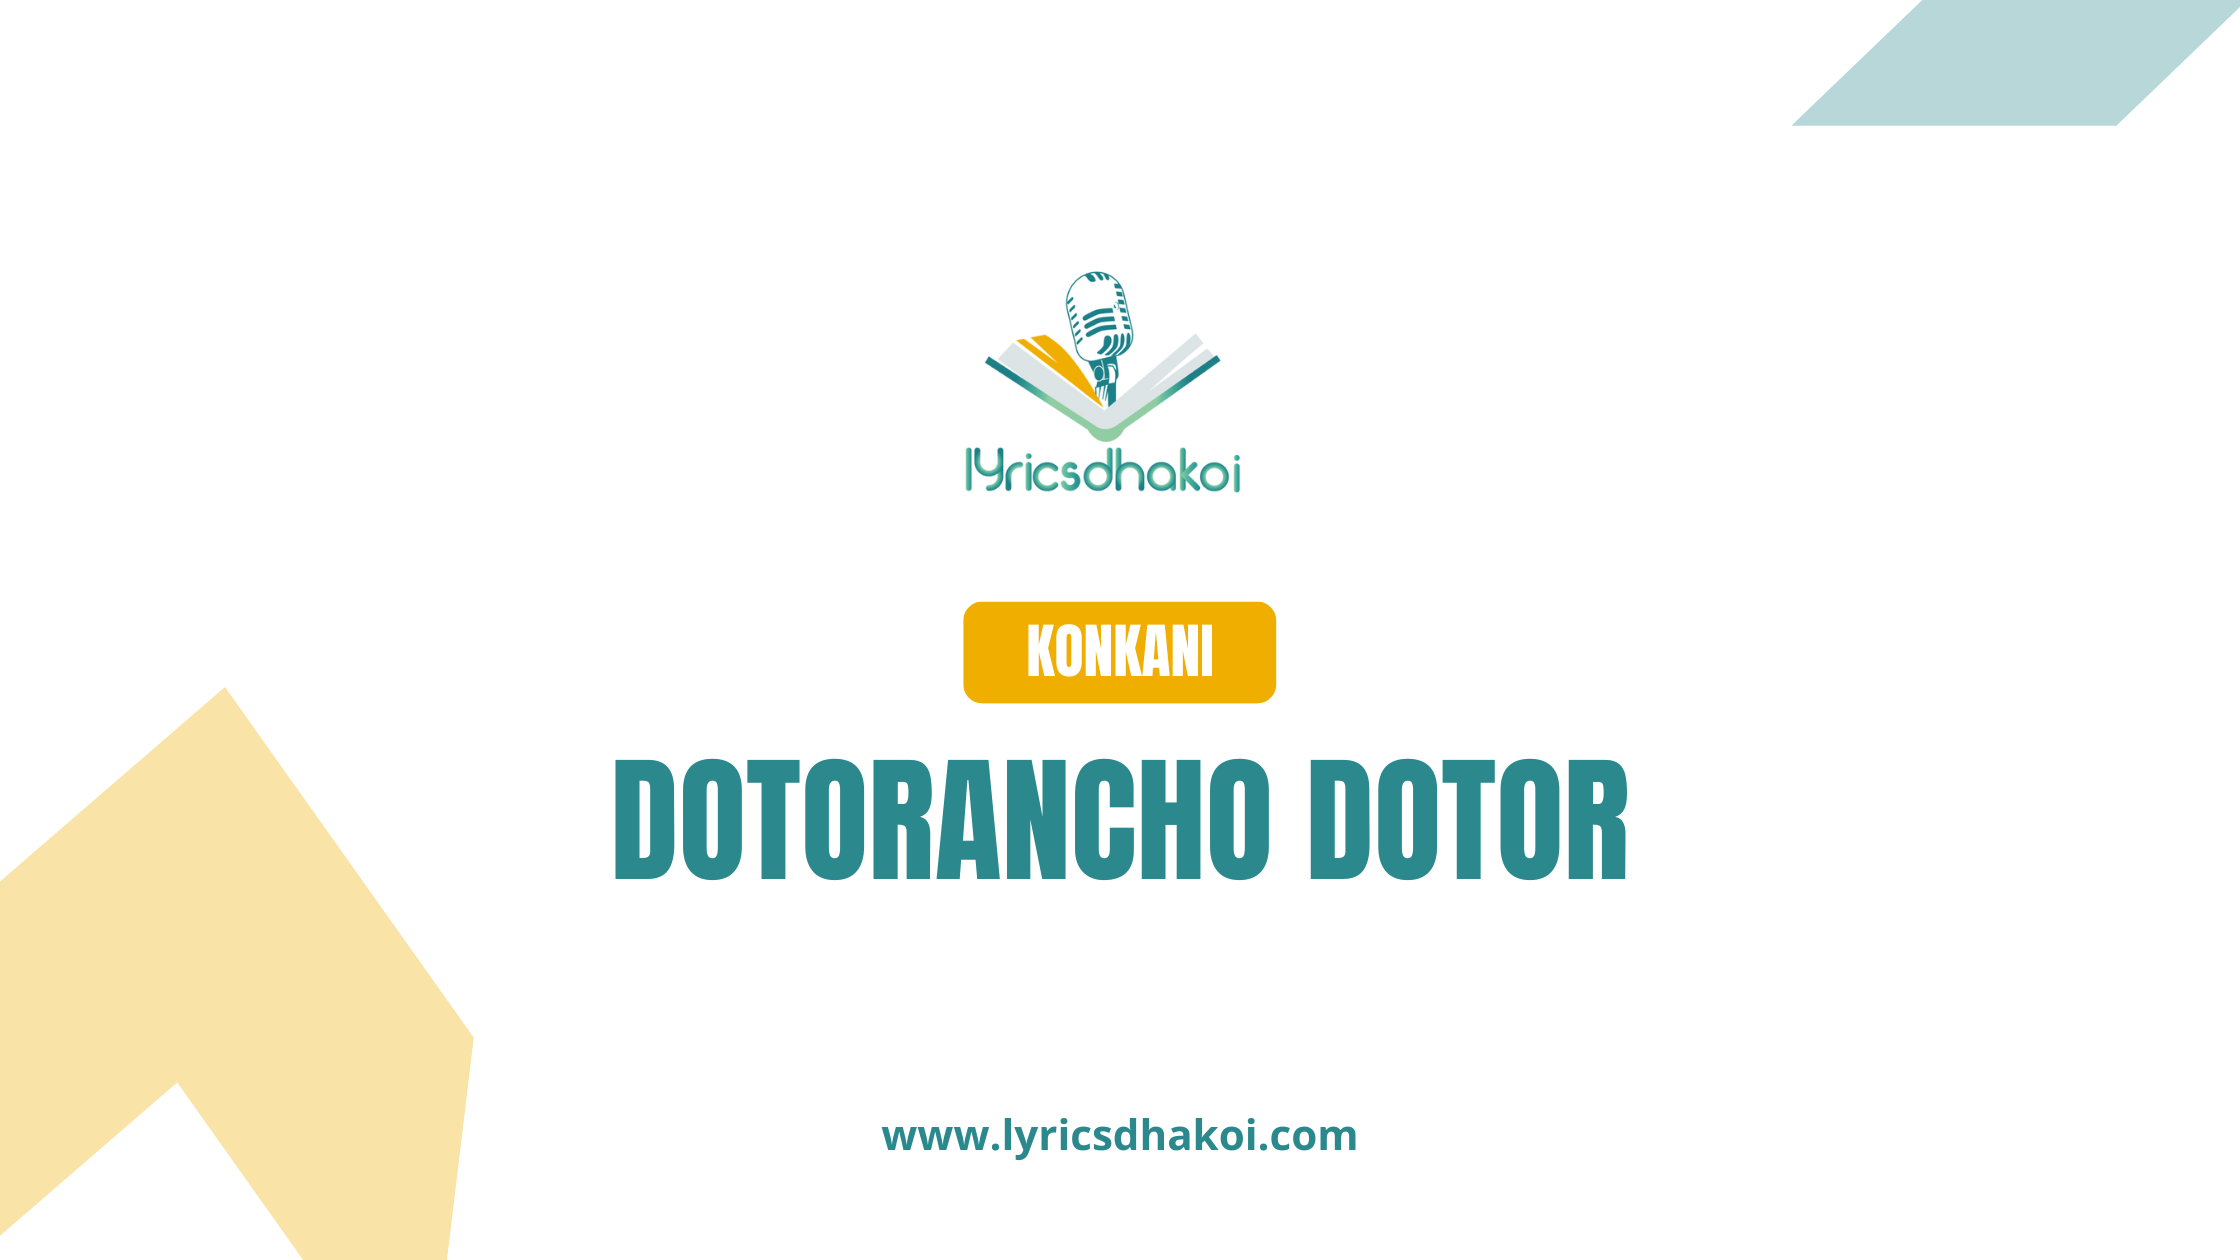 Dotorancho Dotor Konkani Lyrics for Karaoke Online - LyricsDhakoi.com